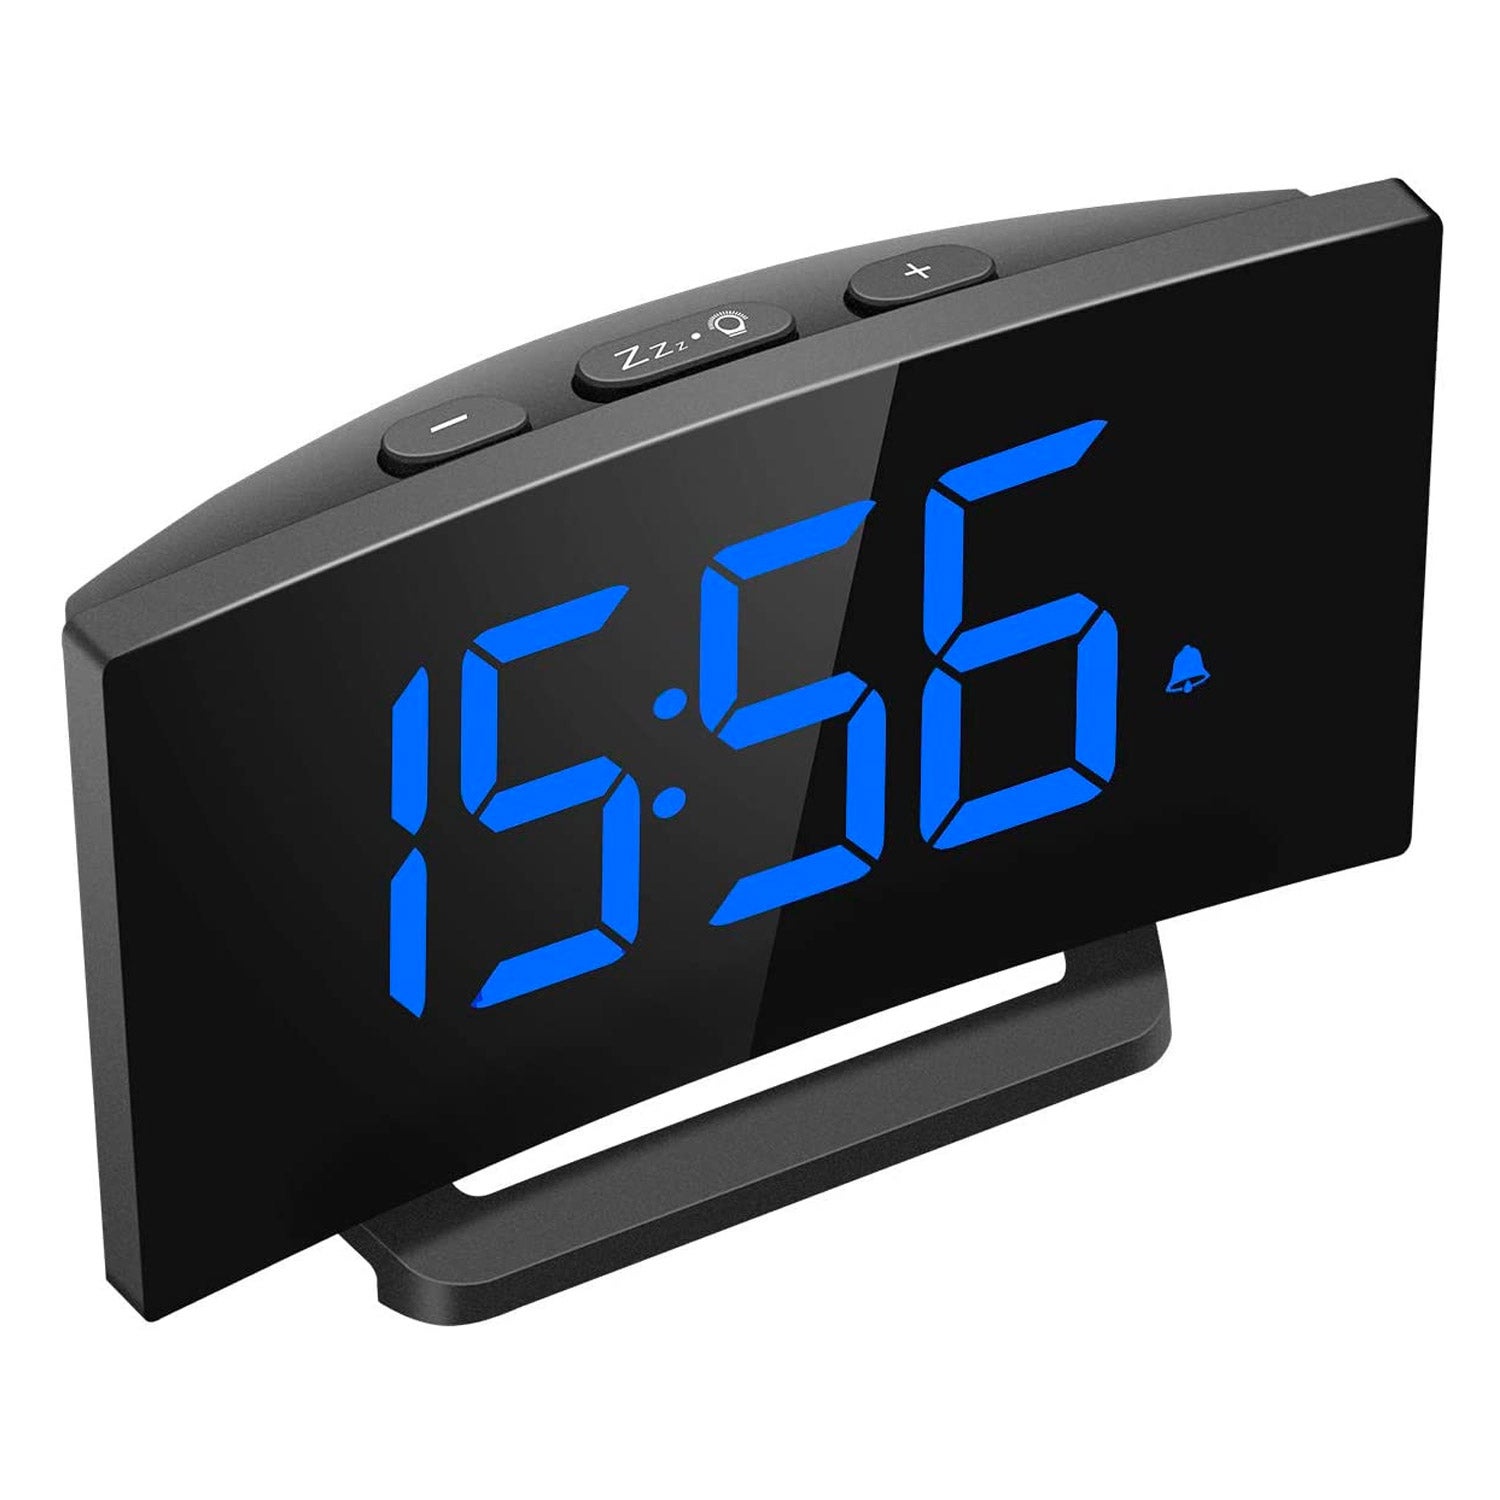 A digital alarm clock